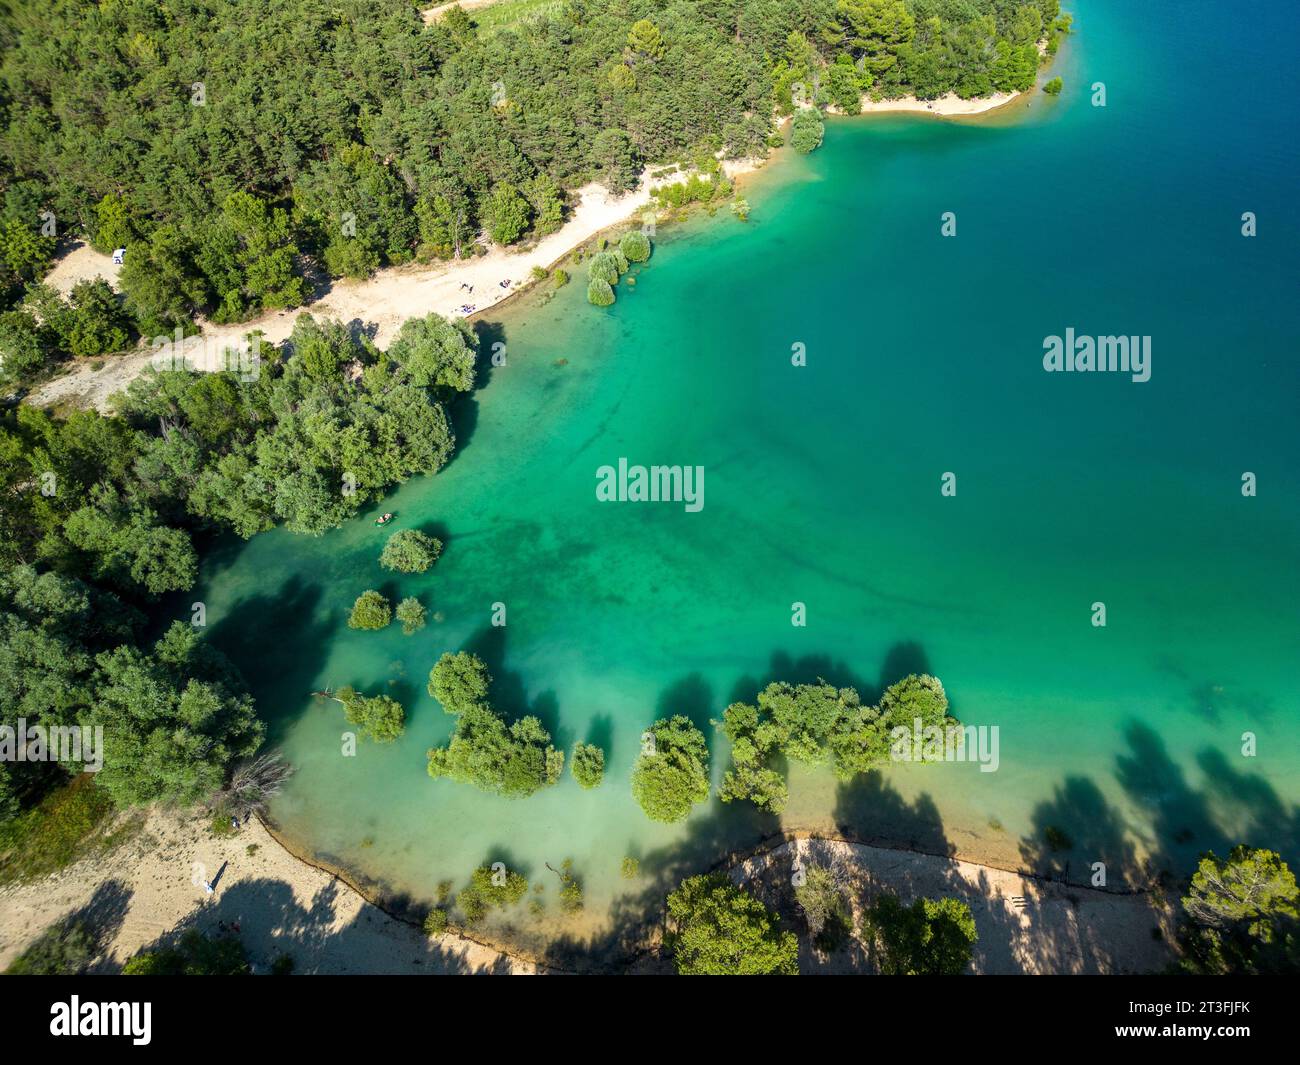 Francia, Alpes-de-Haute-Provence, parco naturale regionale del Verdon, lago di Sainte-Croix (vista aerea) Foto Stock